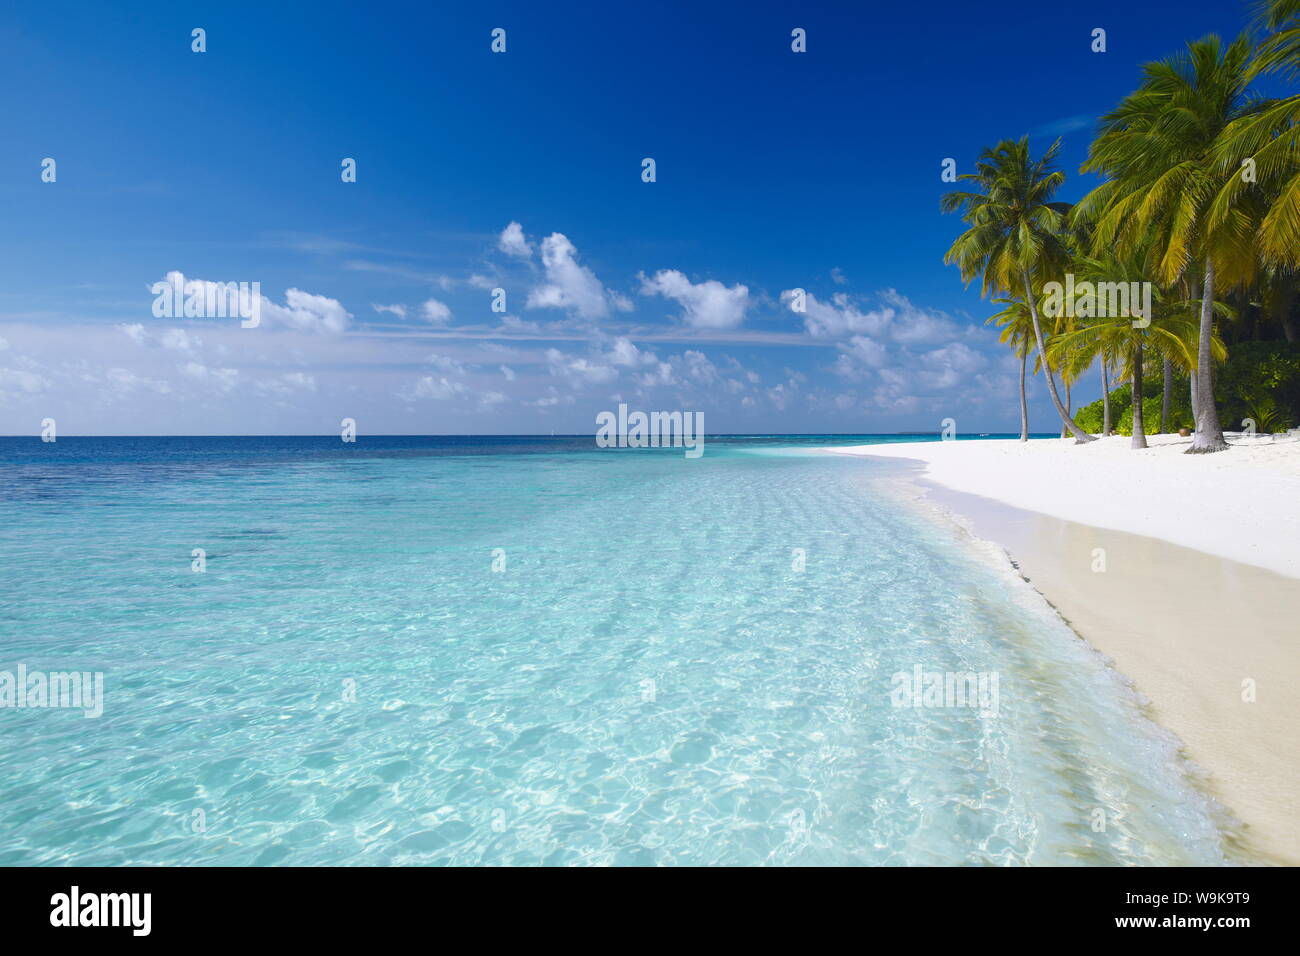 Tropische Insel und Strand, Malediven, Indischer Ozean, Asien Stockfoto